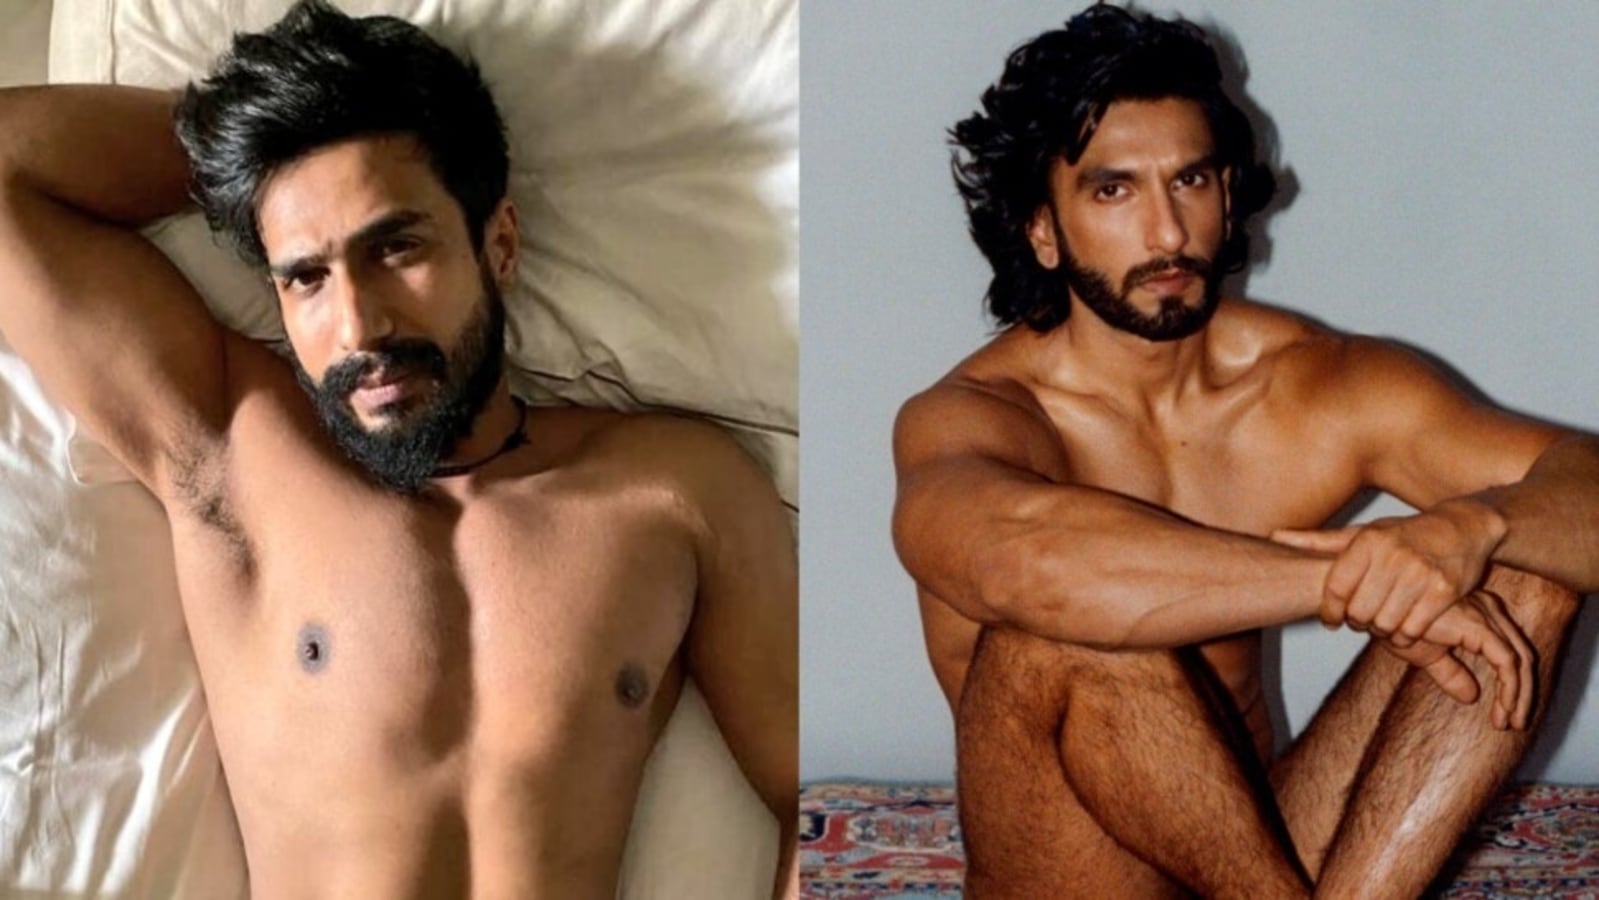 After Ranveer Singh, Vishnu Vishal poses nude as wife Jwala Gutta clicks pic pic